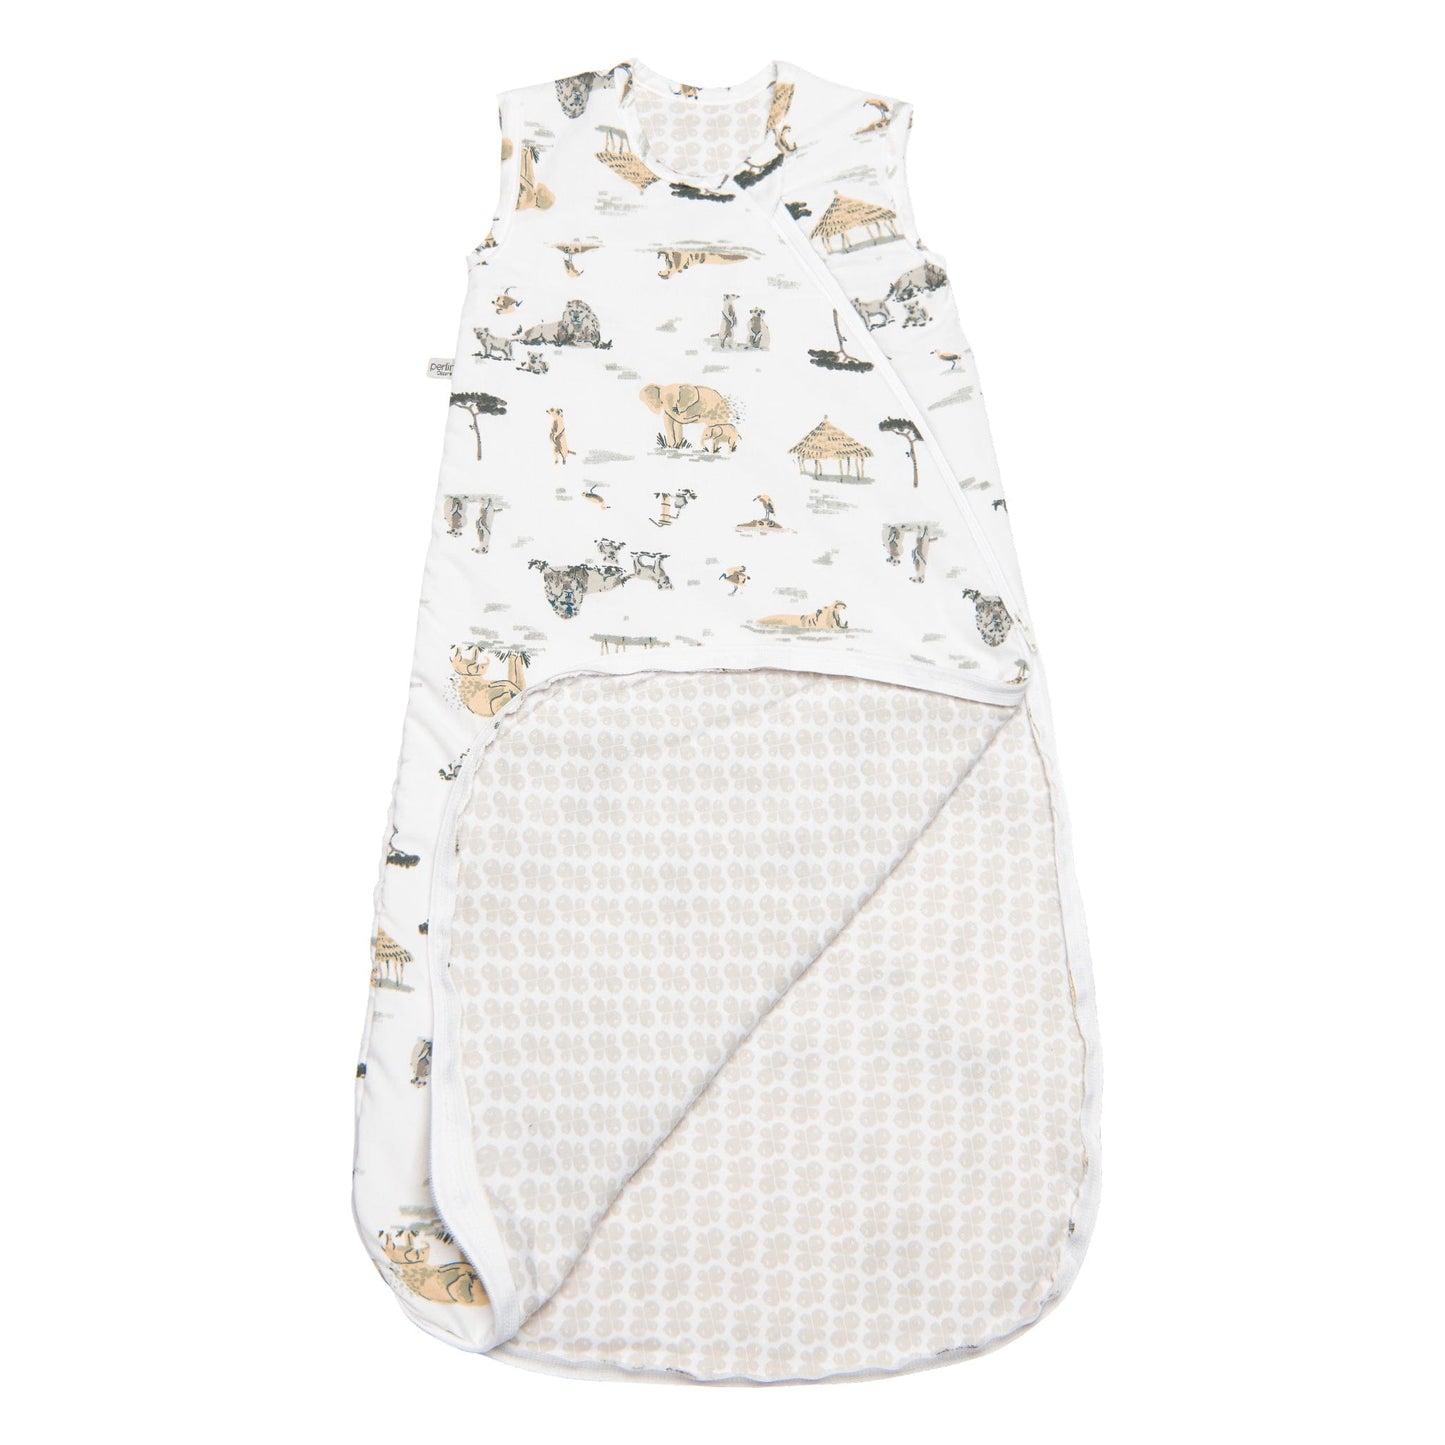 Woven cotton sleep bag  - Safari (2 togs)